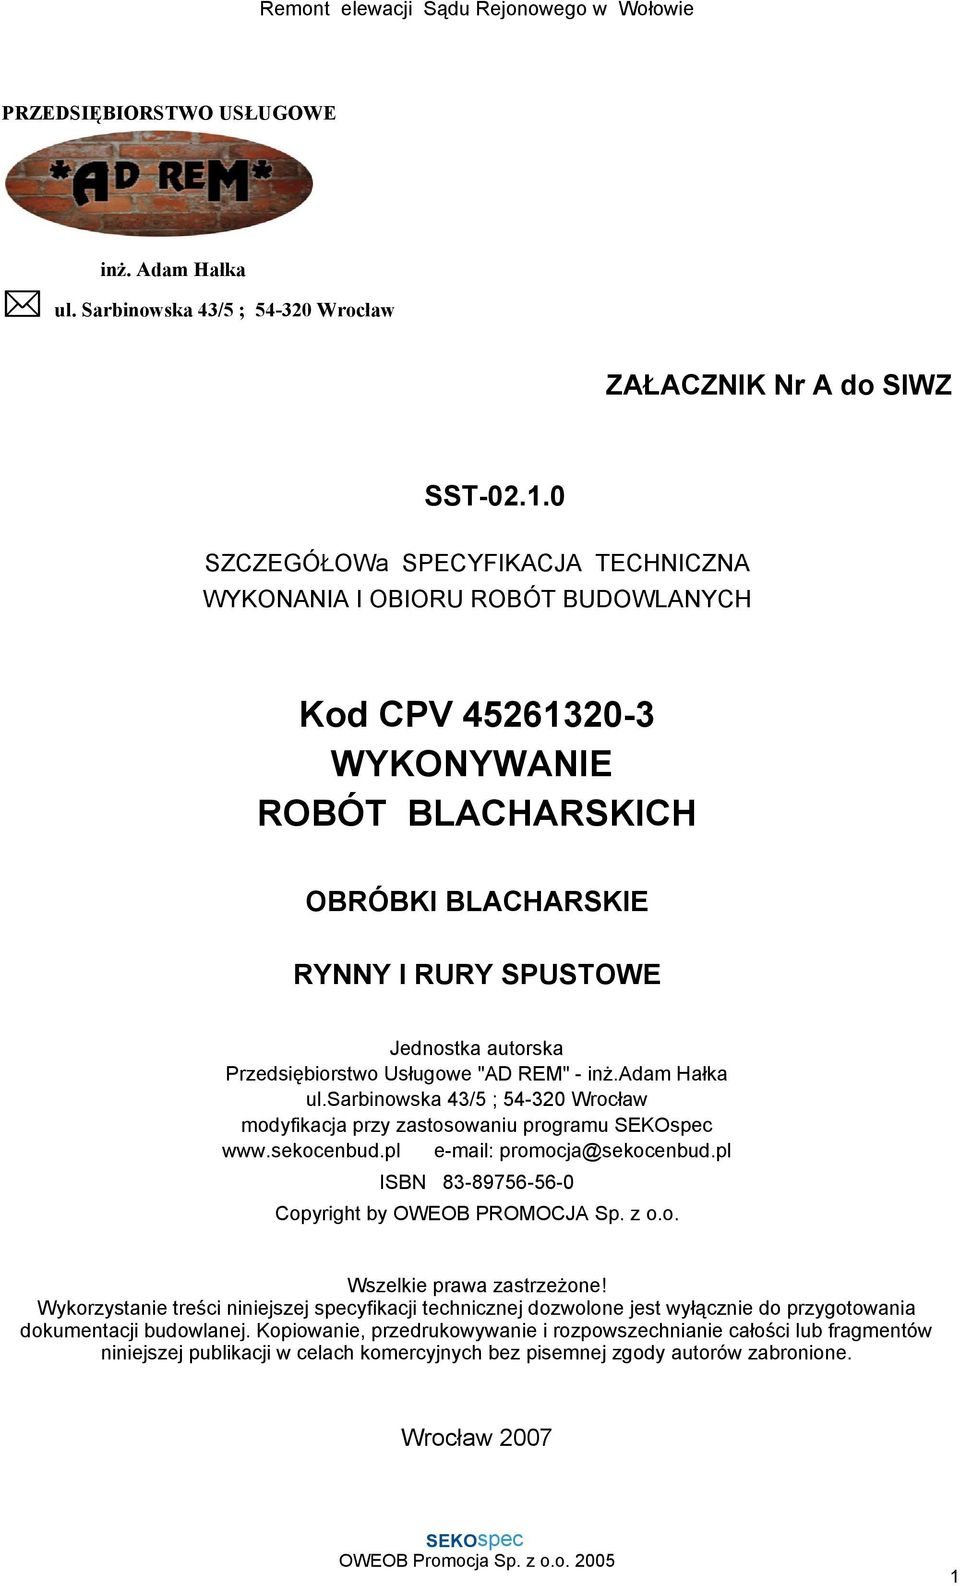 Przedsiębiorstwo Usługowe "AD REM" - inż.adam Hałka ul.sarbinowska 43/5 ; 54-320 Wrocław modyfikacja przy zastosowaniu programu www.sekocenbud.pl e-mail: promocja@sekocenbud.